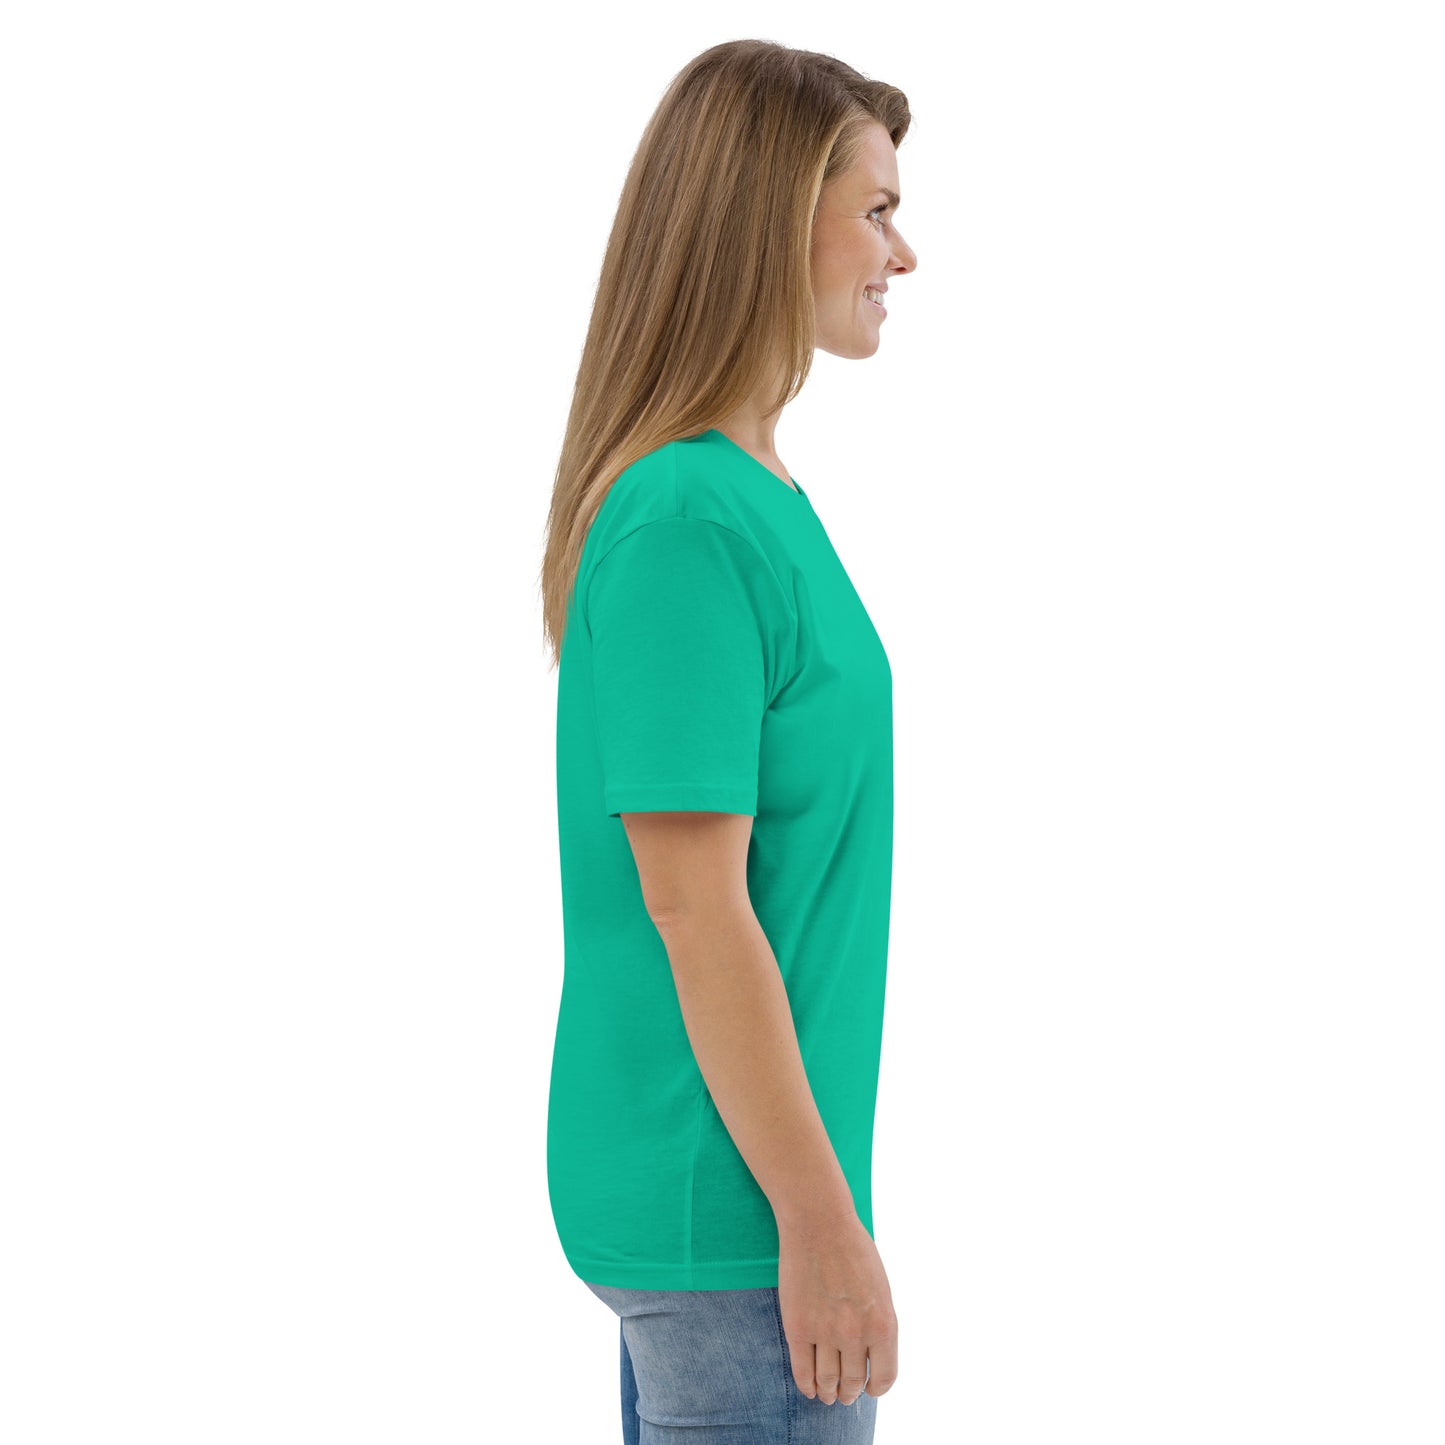 SOULSKY Logo Unisex Crewneck T-shirt - Lucky Green